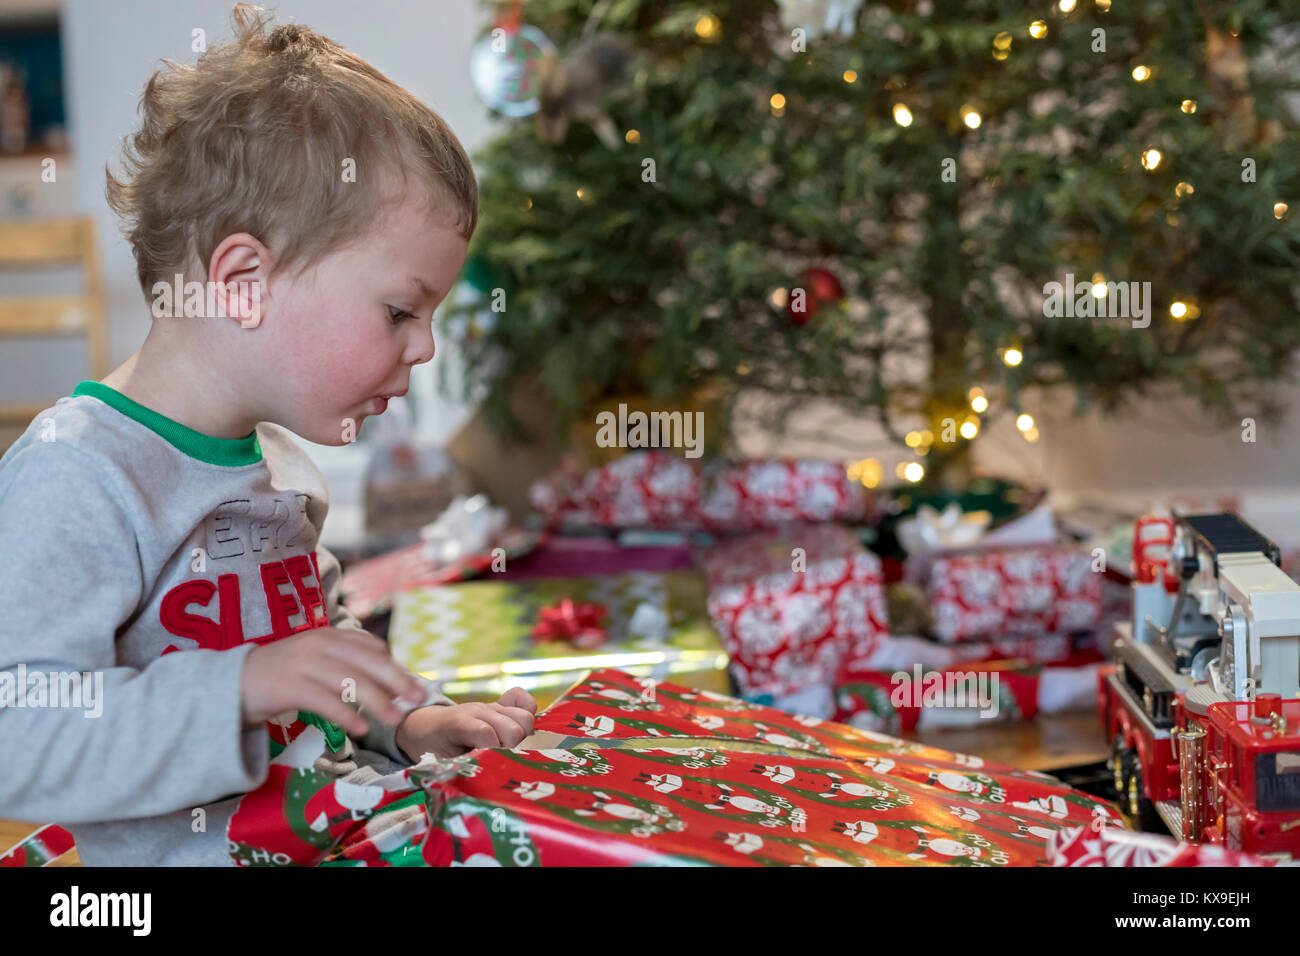 Wheat Ridge, Colorado - Adam Hjermstad jr., 3, geöffnet, präsentiert von Weihnachtsbaum seiner Familie auf Weihnachten Morgen. Stockfoto